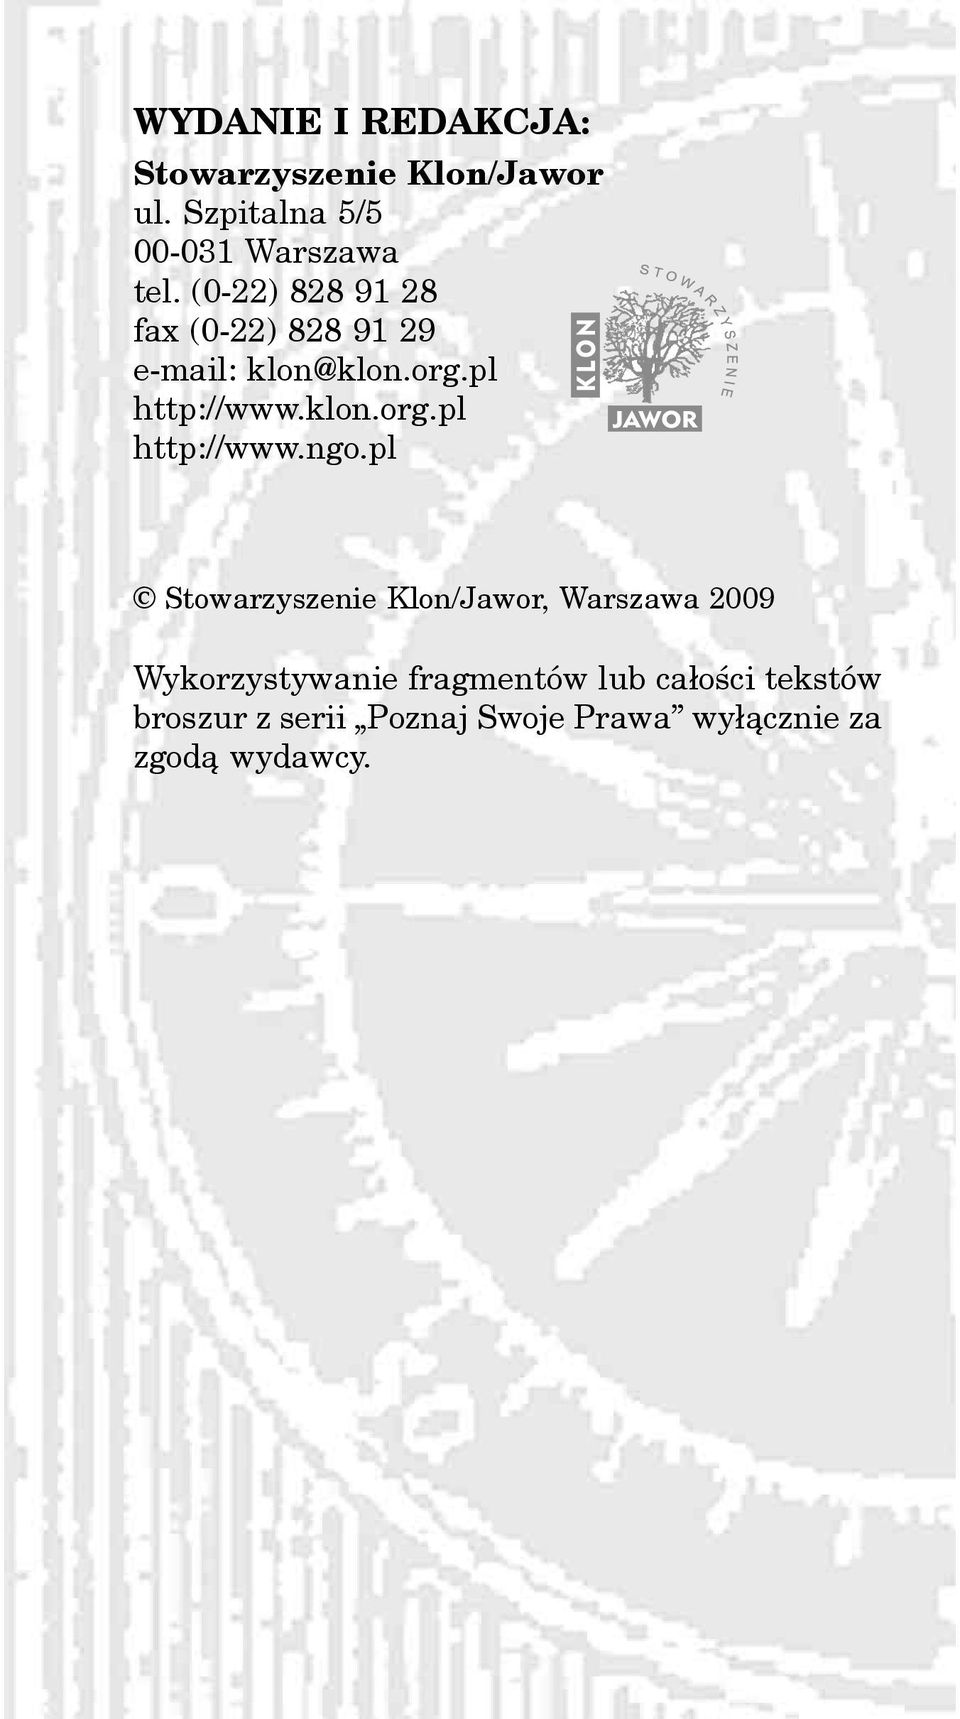 pl Stowarzyszenie Klon/Jawor, Warszawa 2009 Wykorzystywanie fragmentów lub ca³oœci